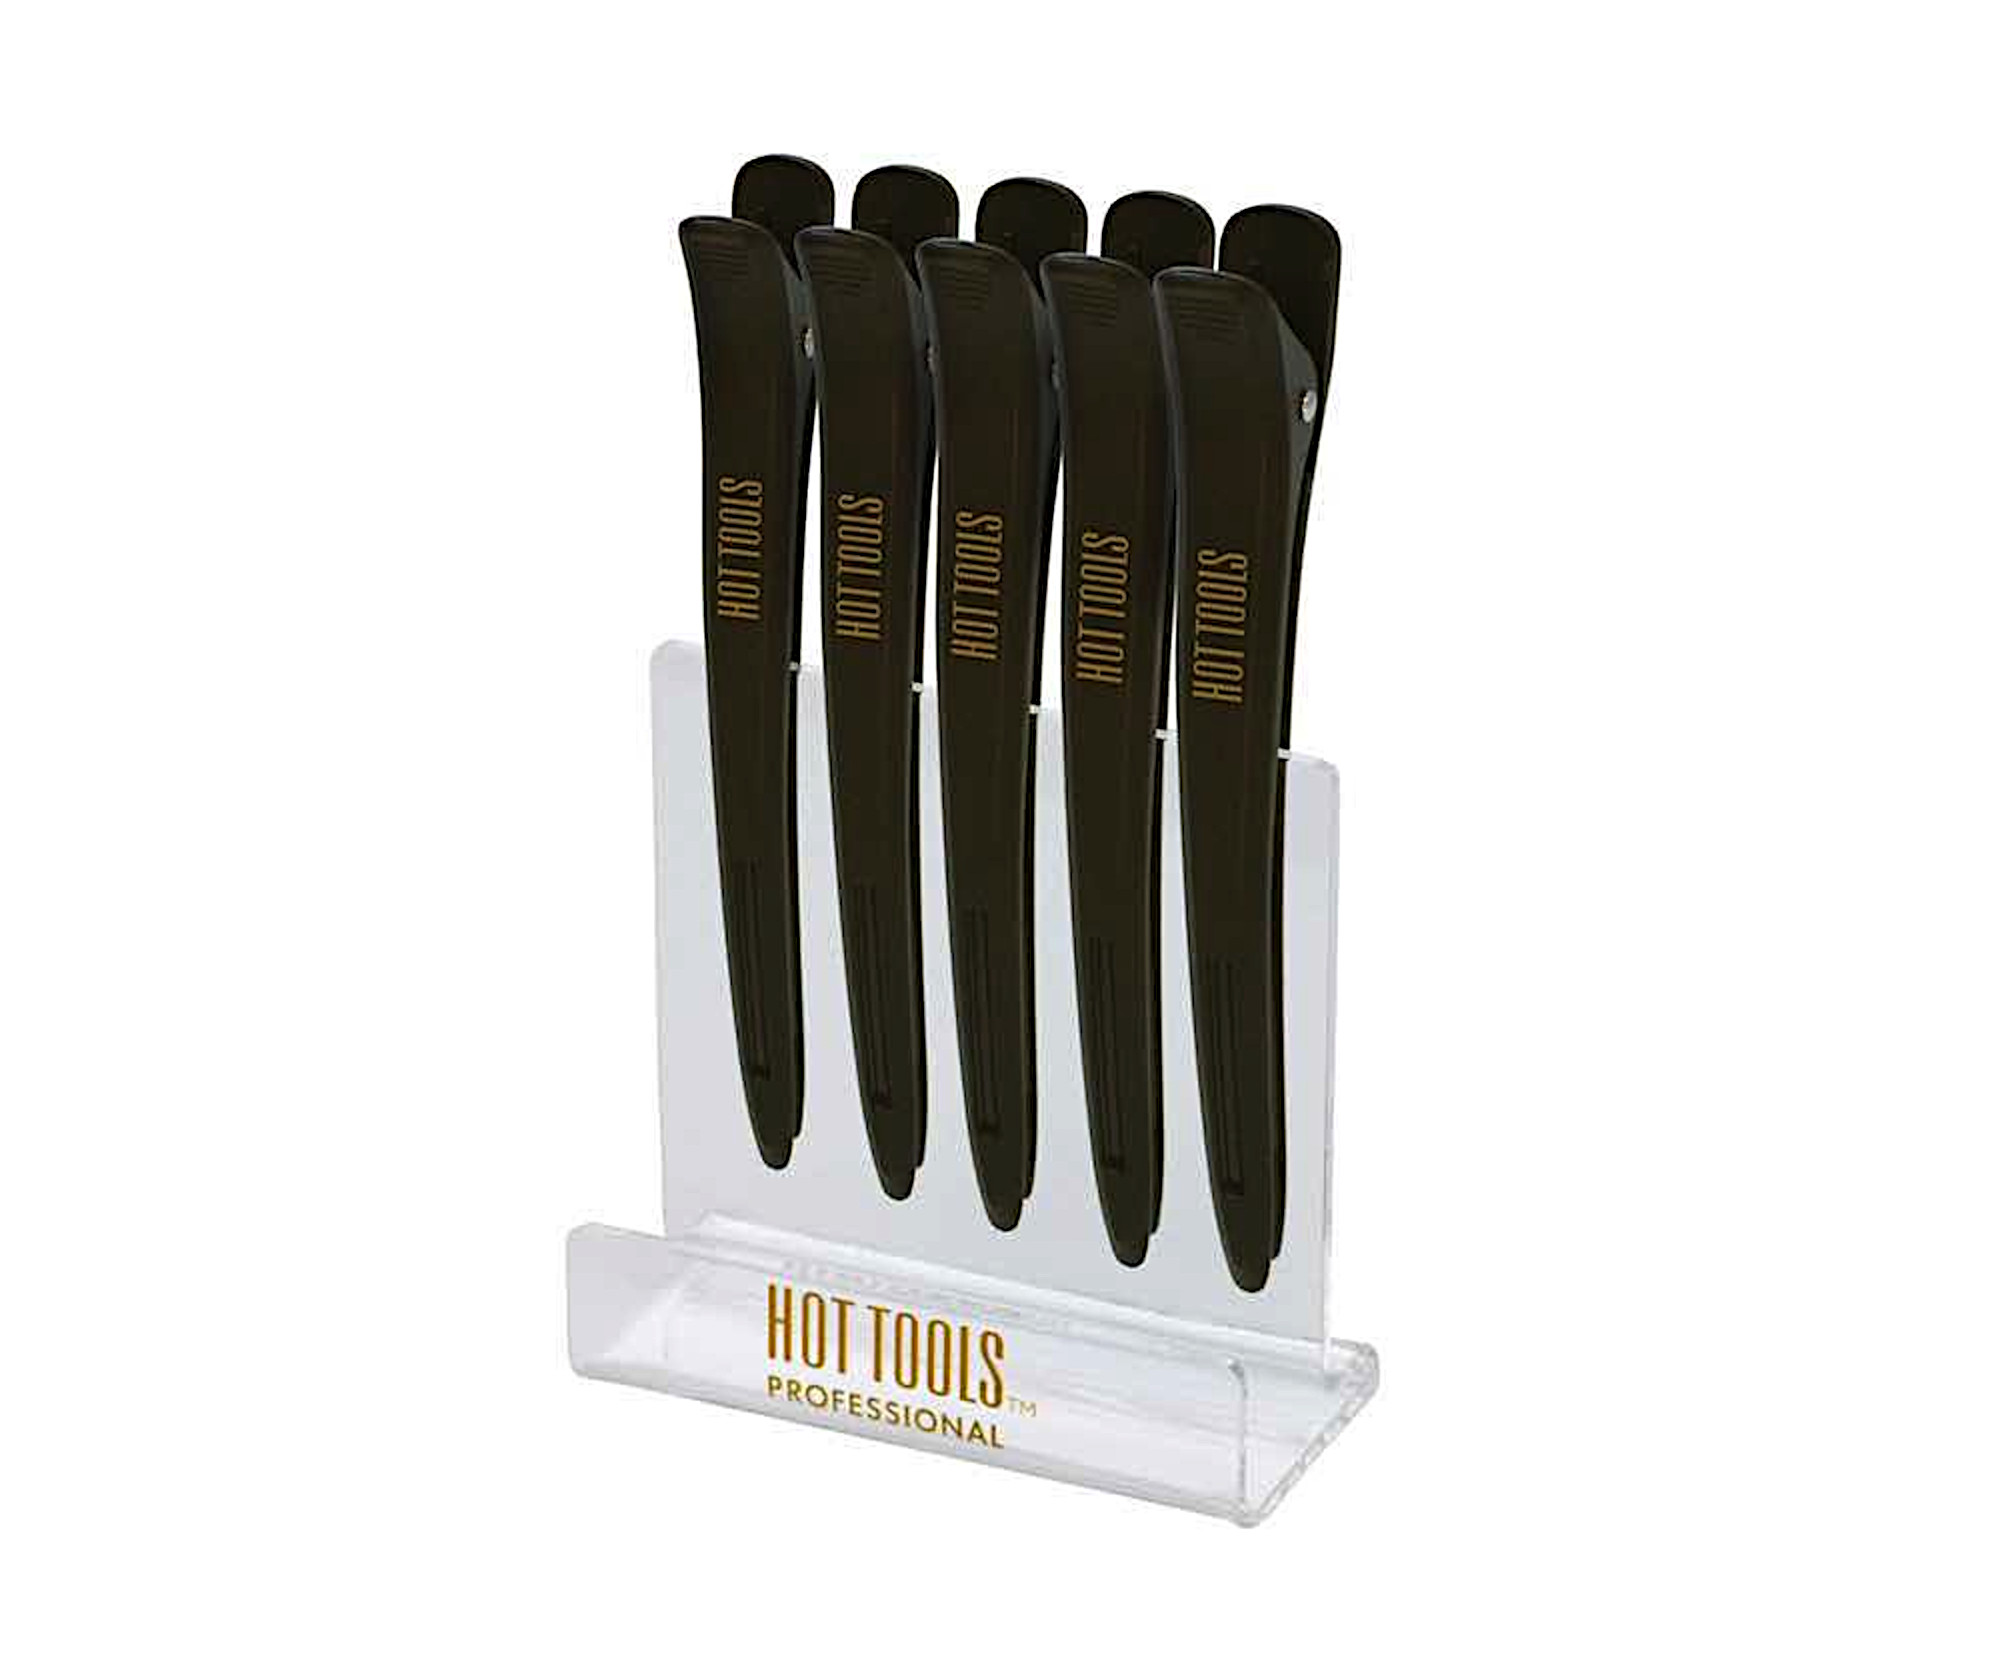 Klipsy do vlasů Hot Tools Hair Clips - 12 cm, černé, 5 ks (HTCLIPS) + dárek zdarma